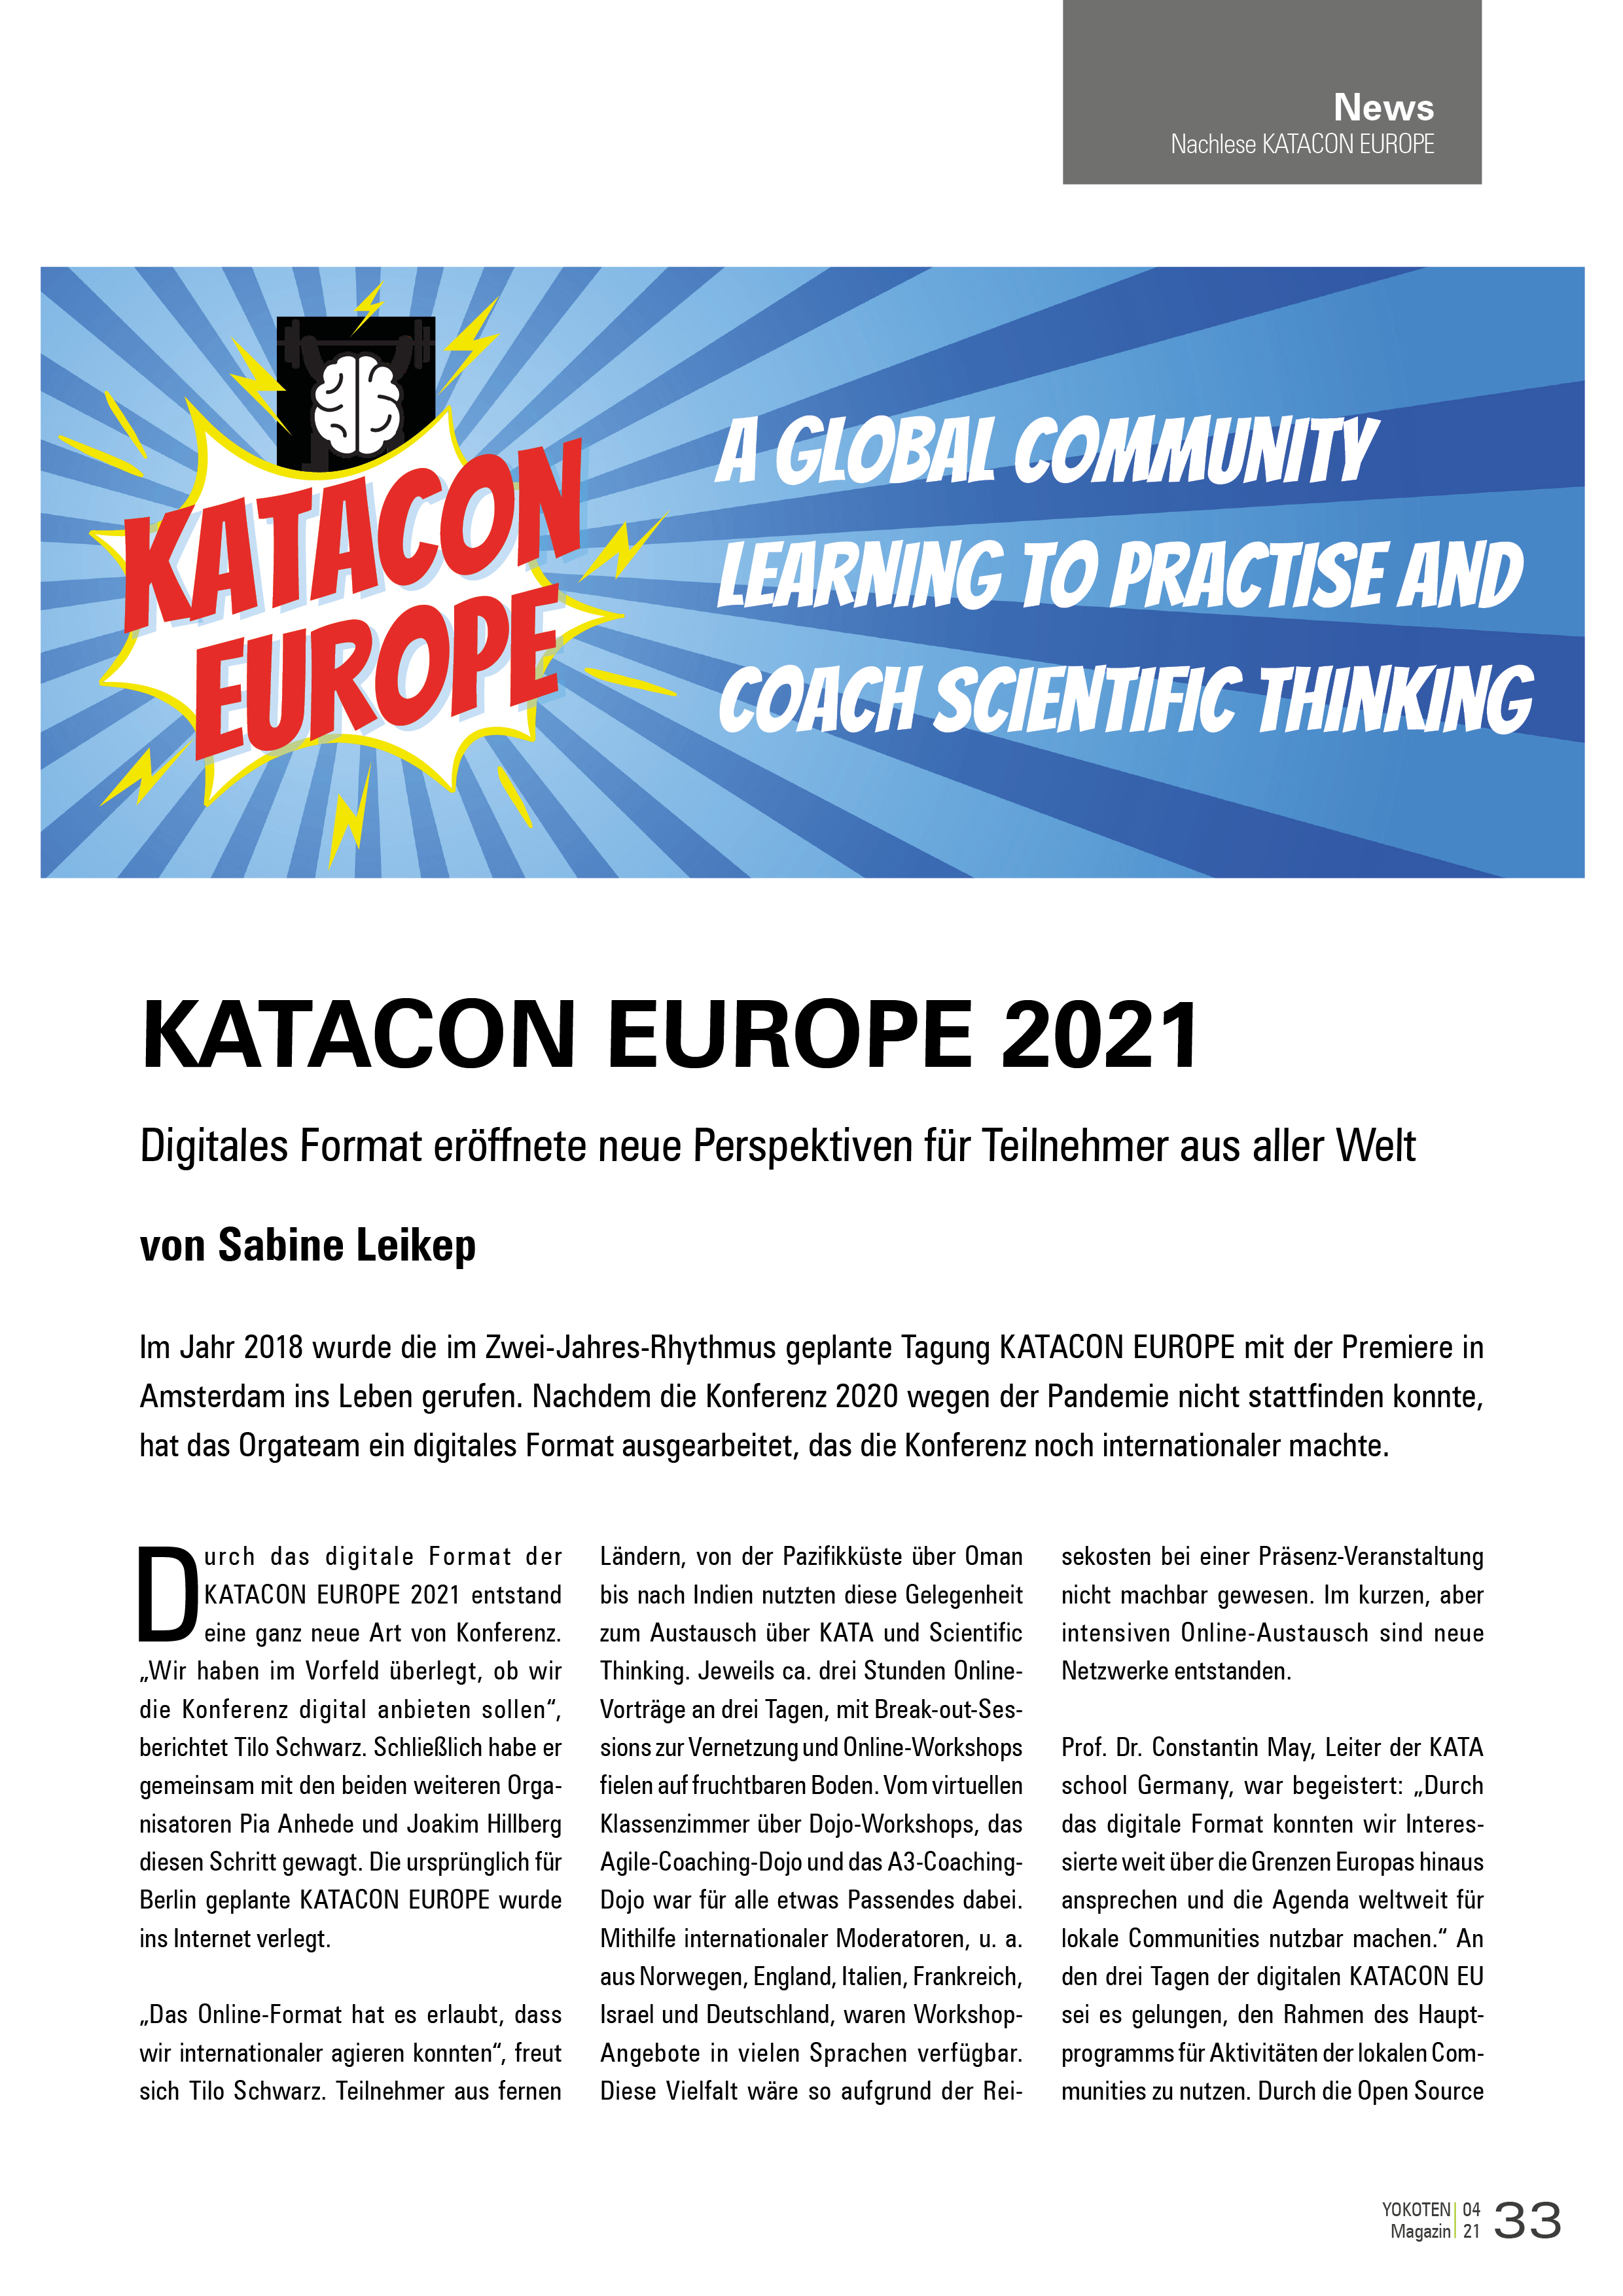 KATACON EUROPE 2021 - Artikel aus Fachmagazin YOKOTEN 2021-04